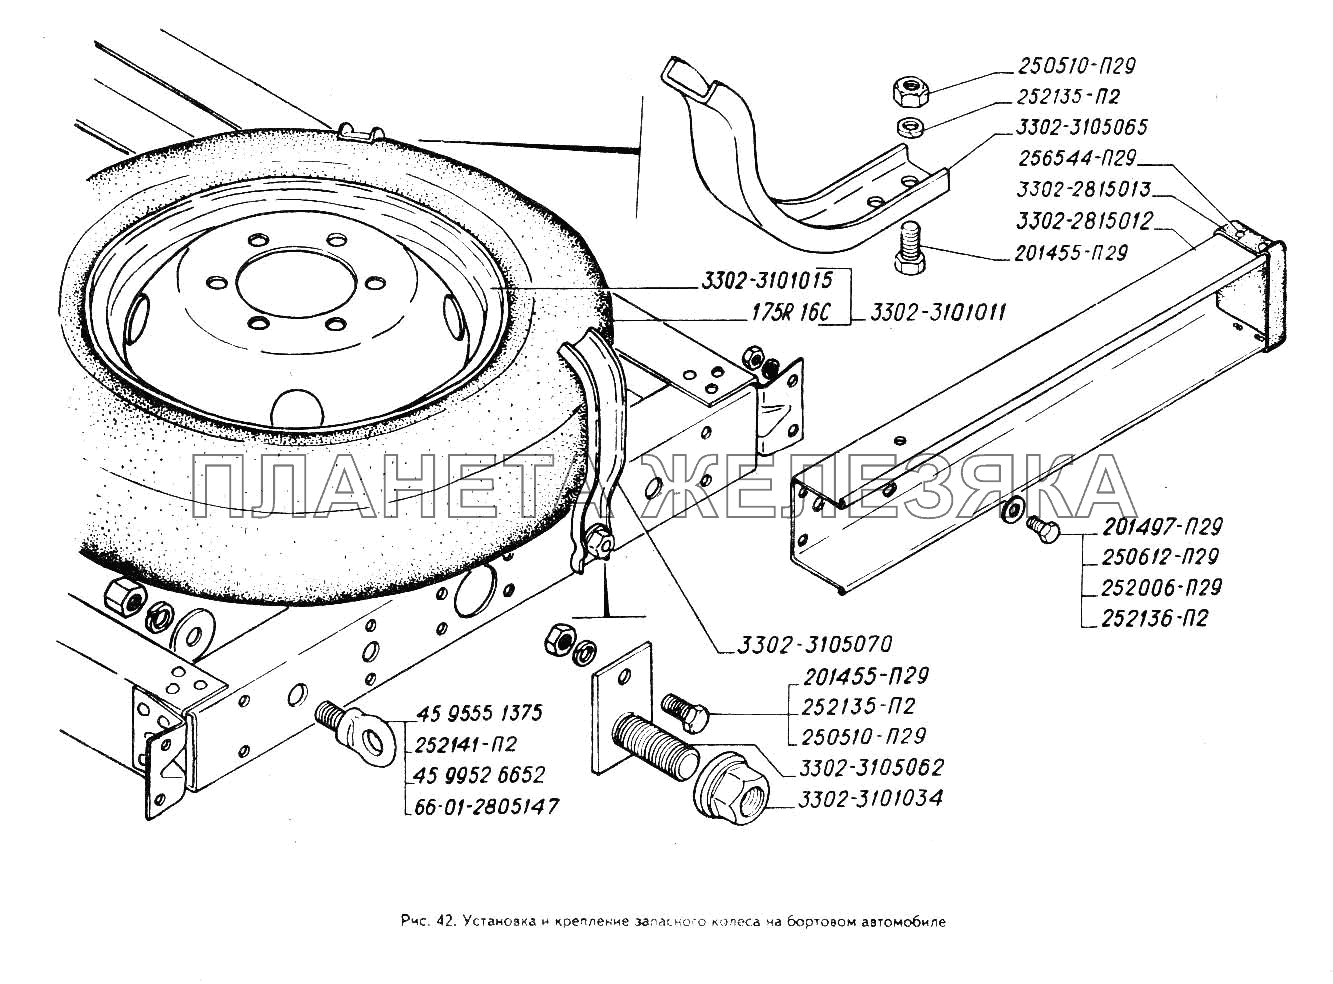 Установка и крепление запасного колеса на бортовом автомобиле ГАЗ-3302 (ГАЗель)